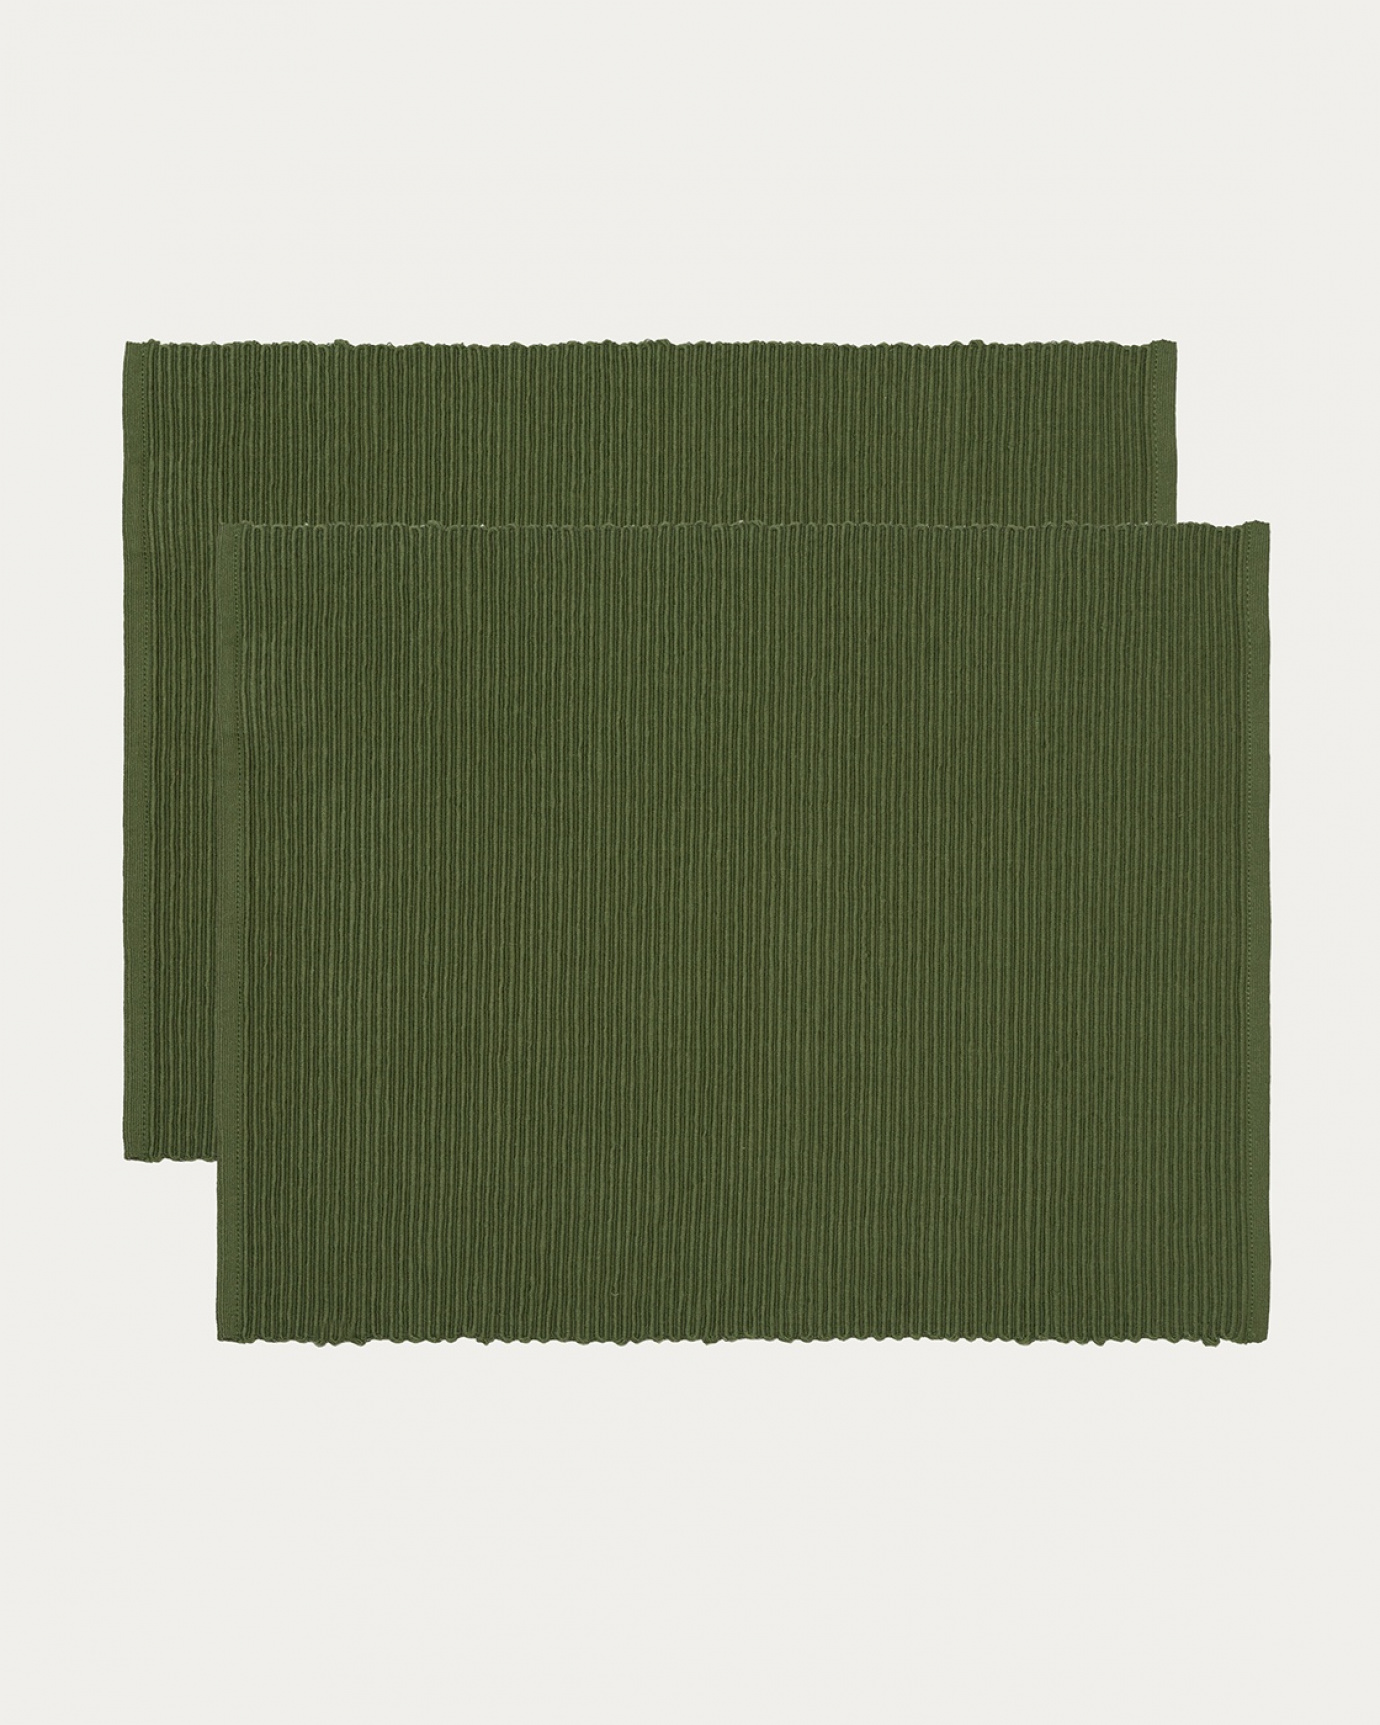 Produktbild mörk olivgrön UNI bordstablett av mjuk bomull i ribbad kvalité från LINUM DESIGN. Storlek 35x46 cm och säljs i 2-pack.